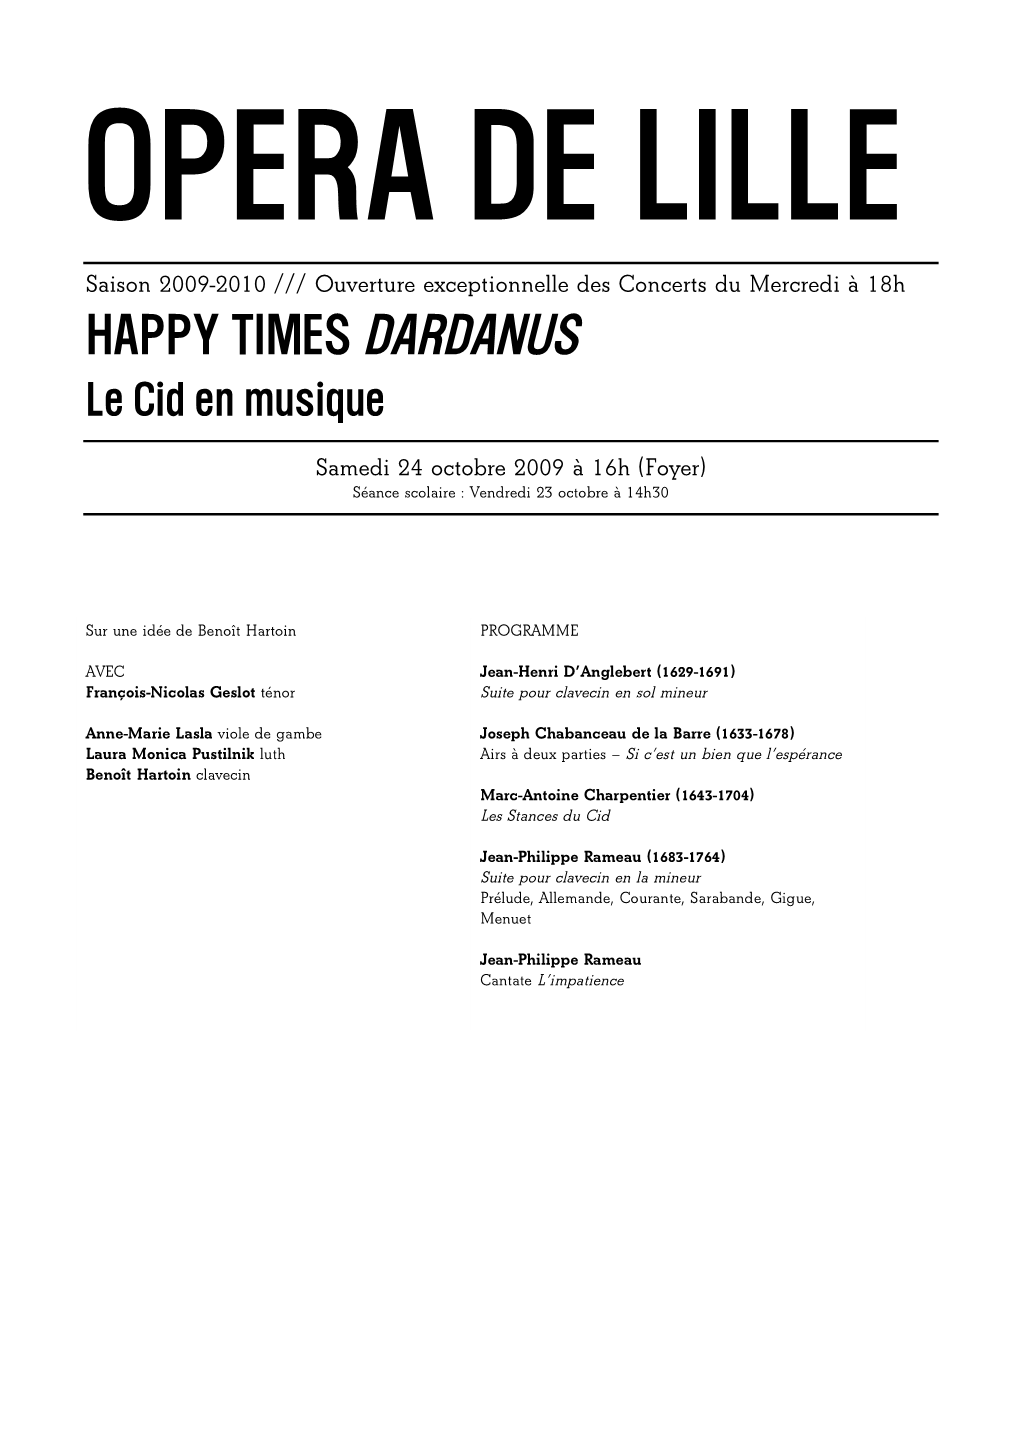 HAPPY TIMES DARDANUS Le Cid En Musique